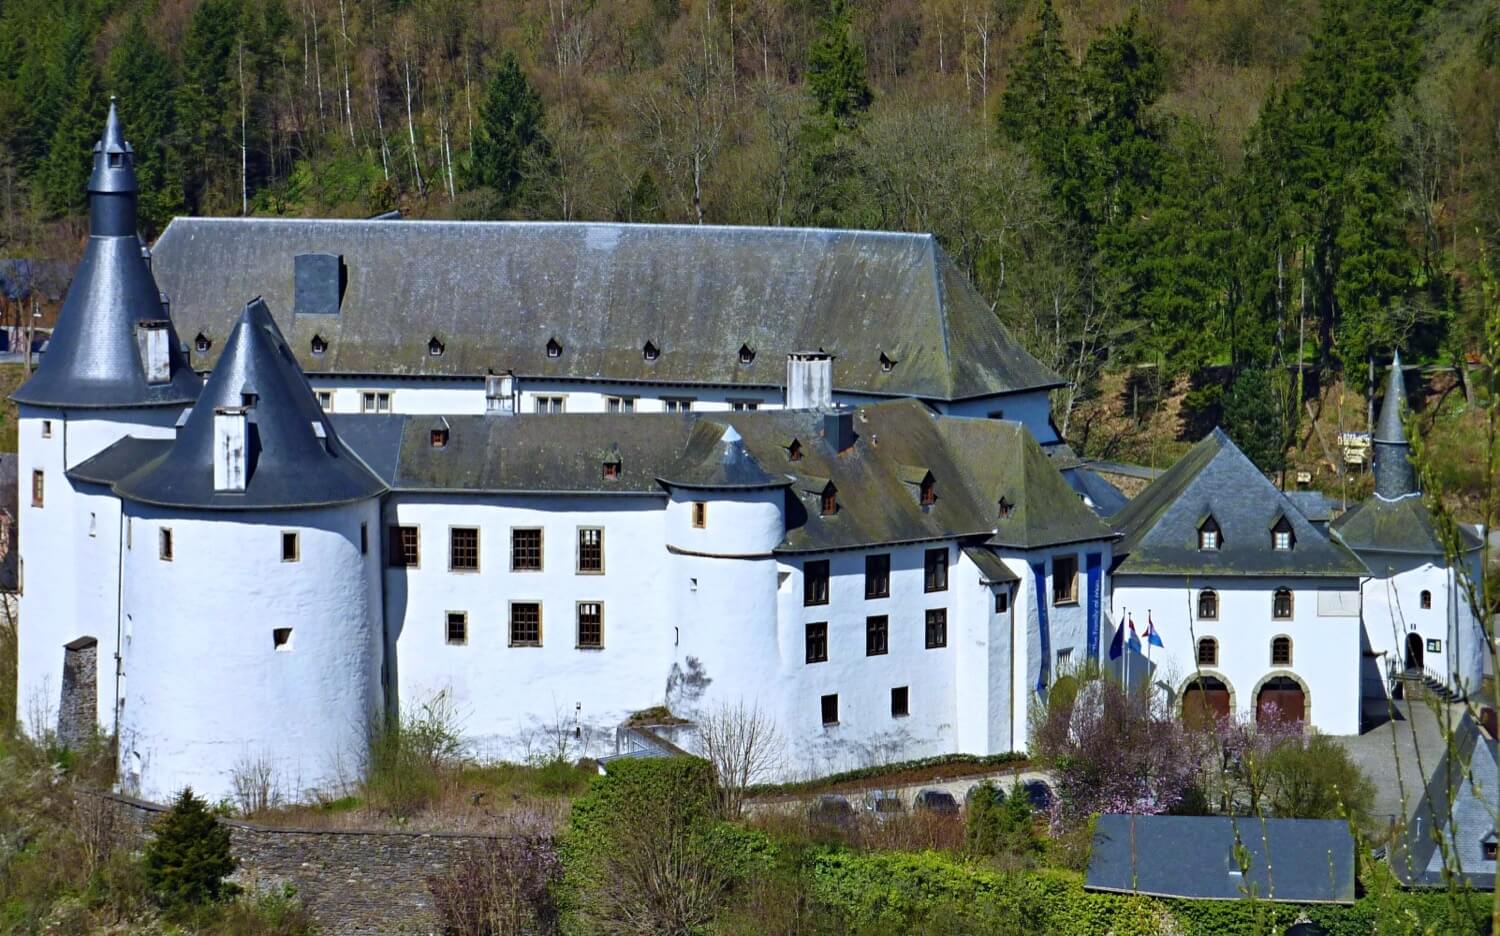 Clervaux Castle